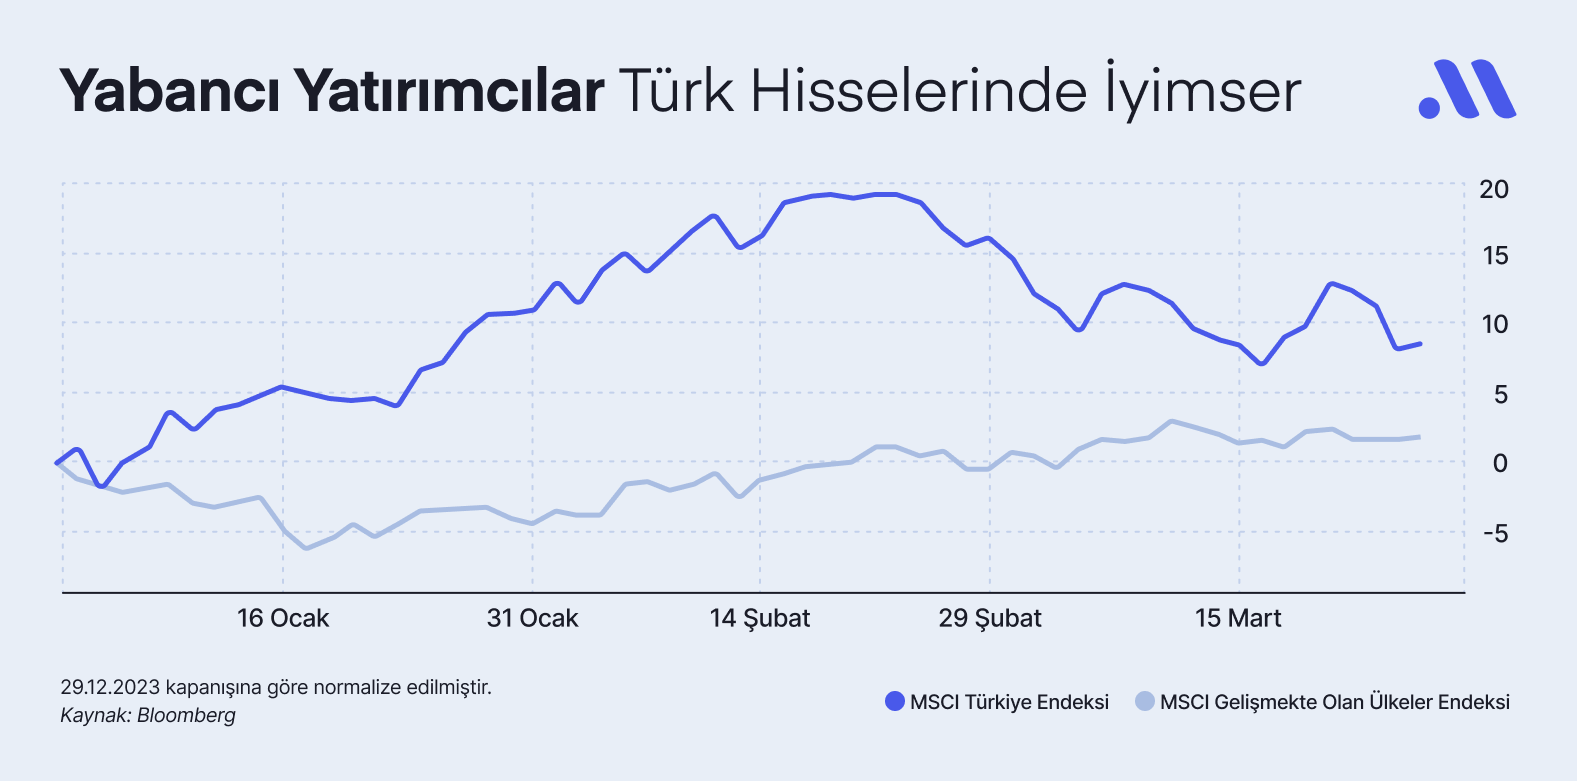 Yabancı Yatırımcılar Türk Hisselerinde İyimser